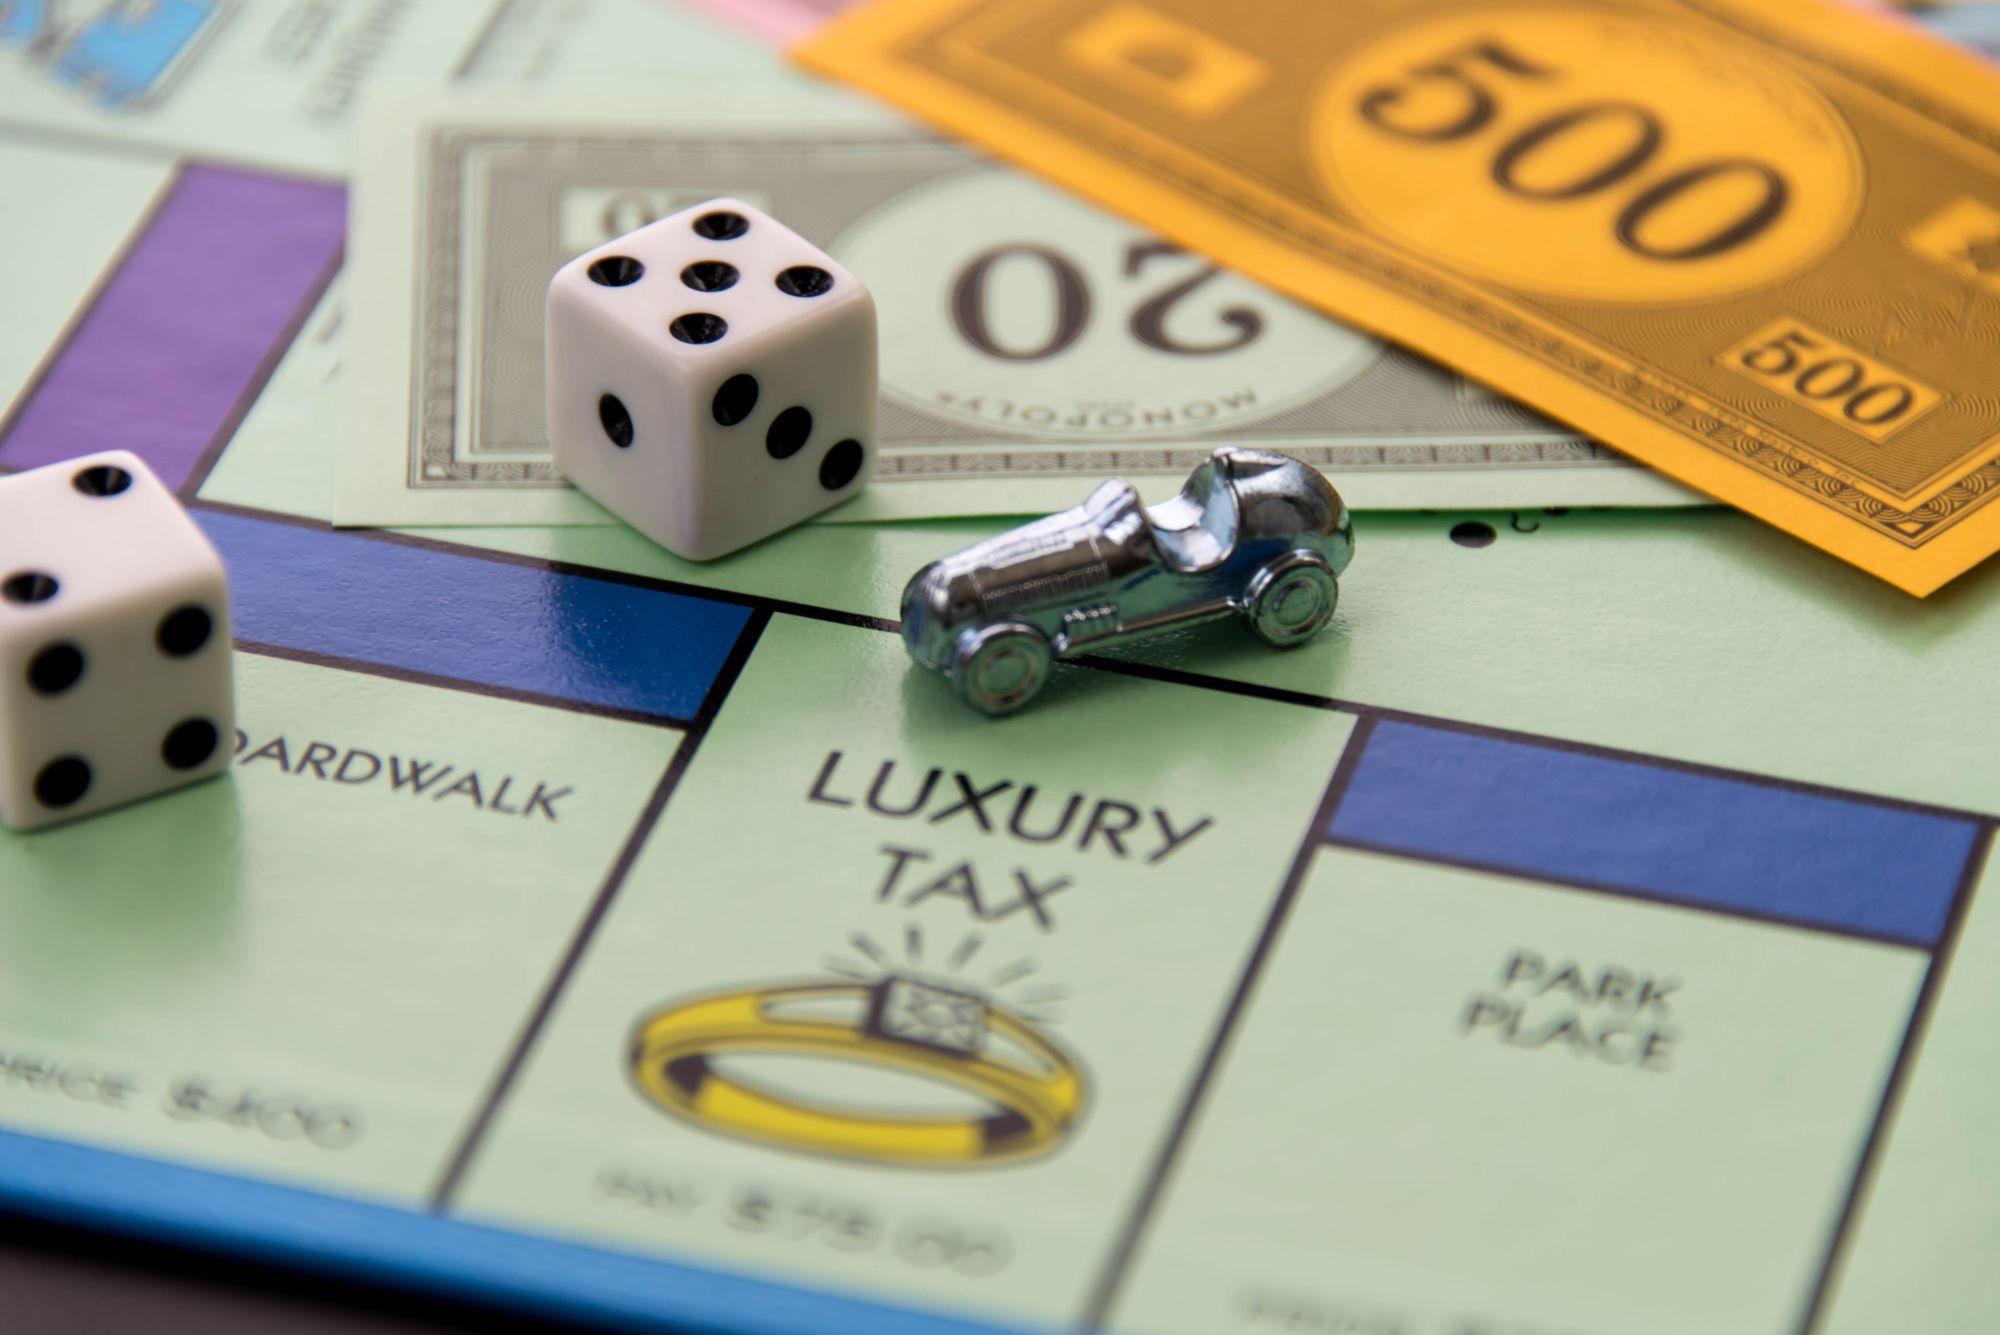 Căsuţa de taxă de lux din jocul Monopoly